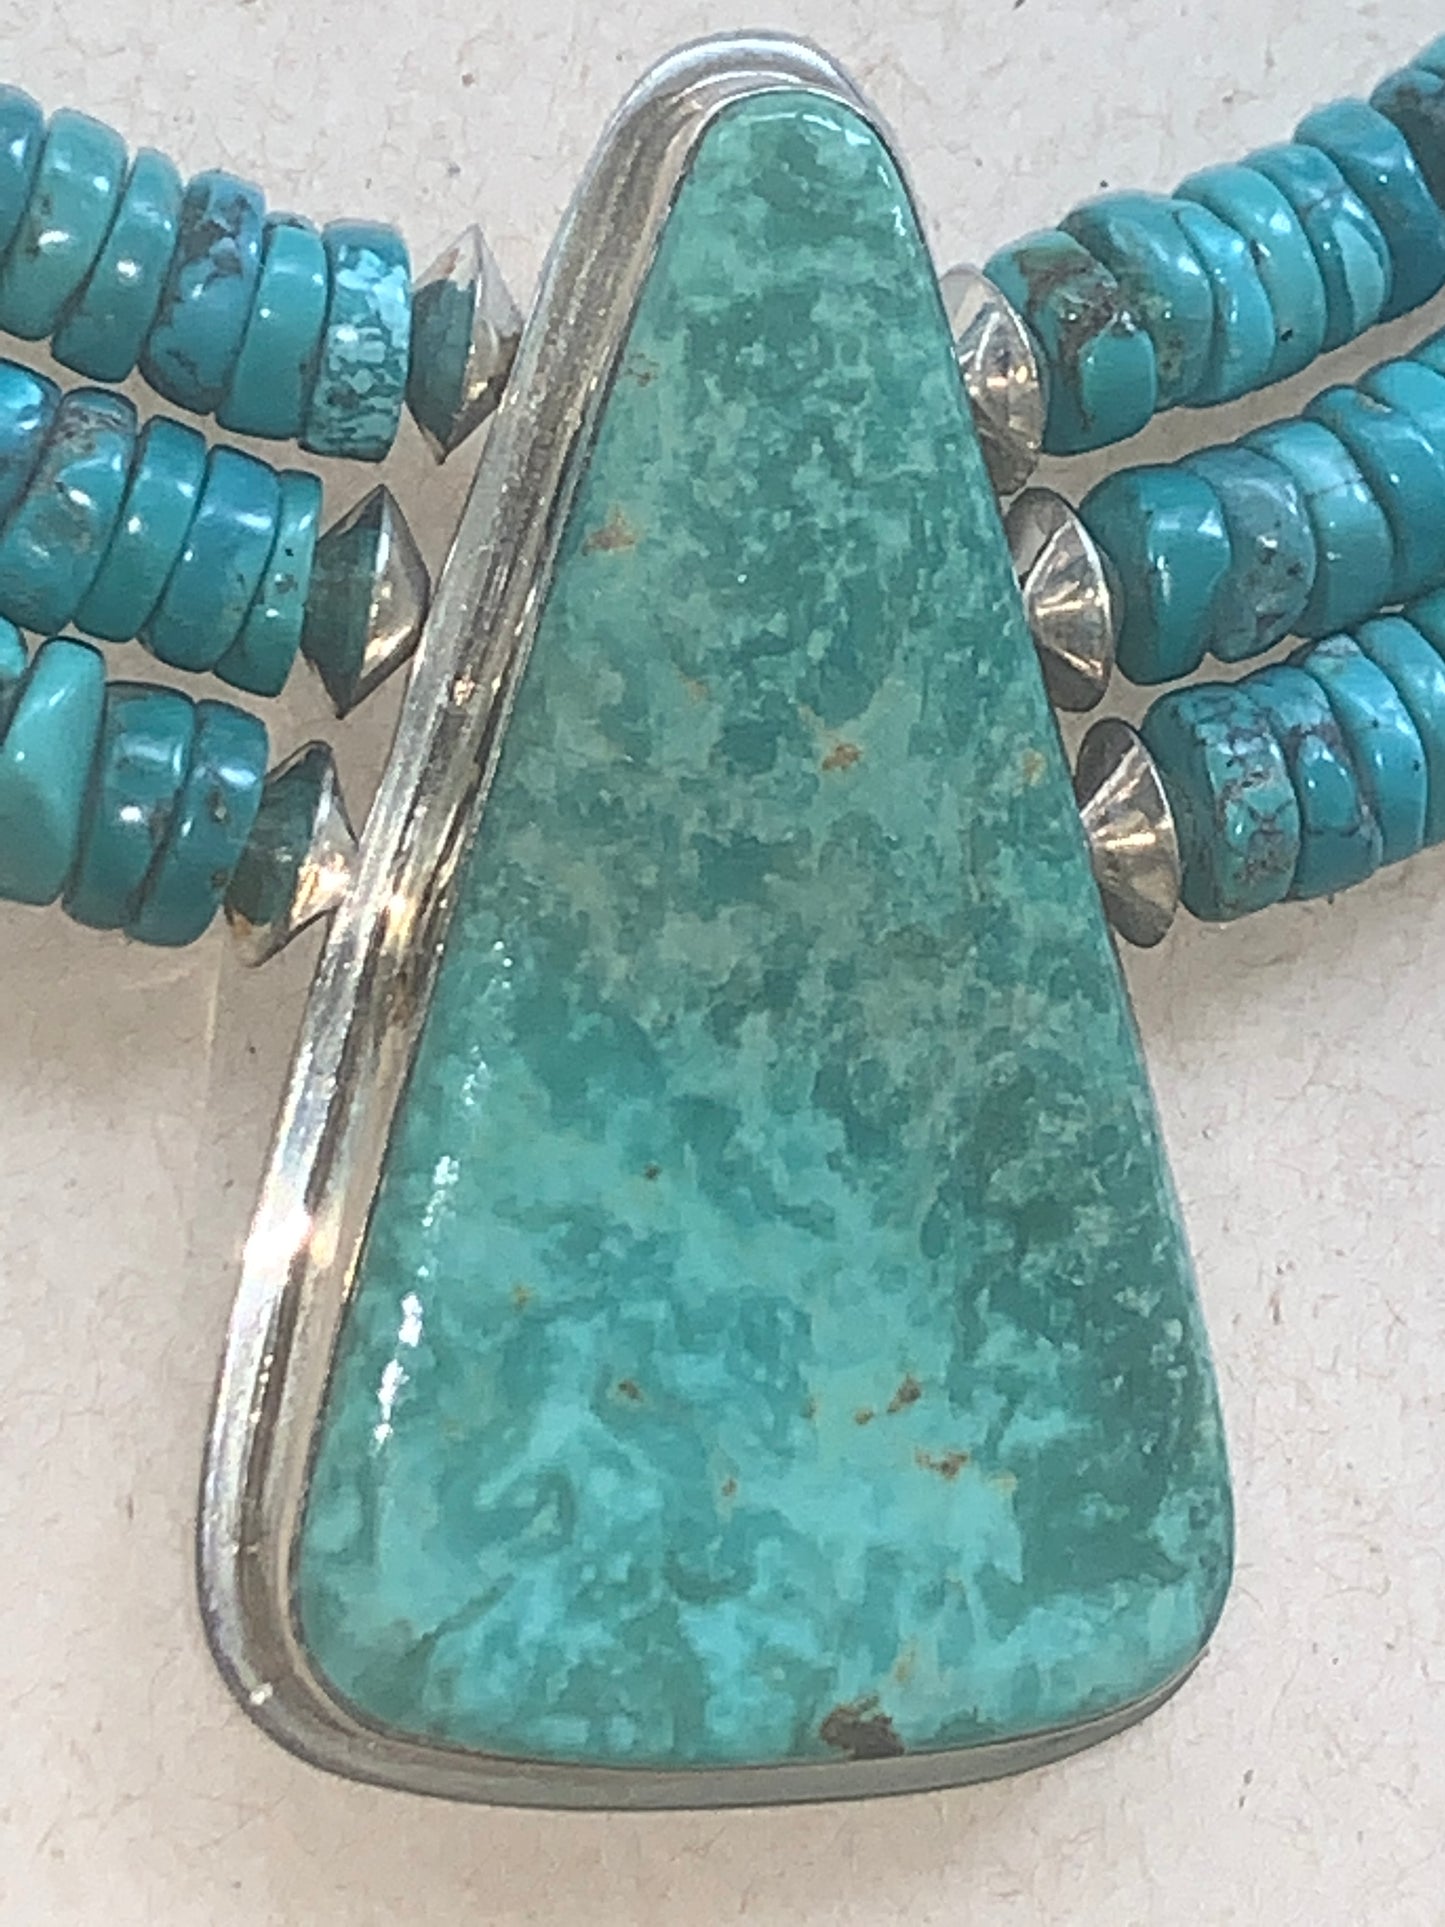 New Turquoise Necklace by Nestoria Pat Coriz - Santo Domingo Pueblo Tribe